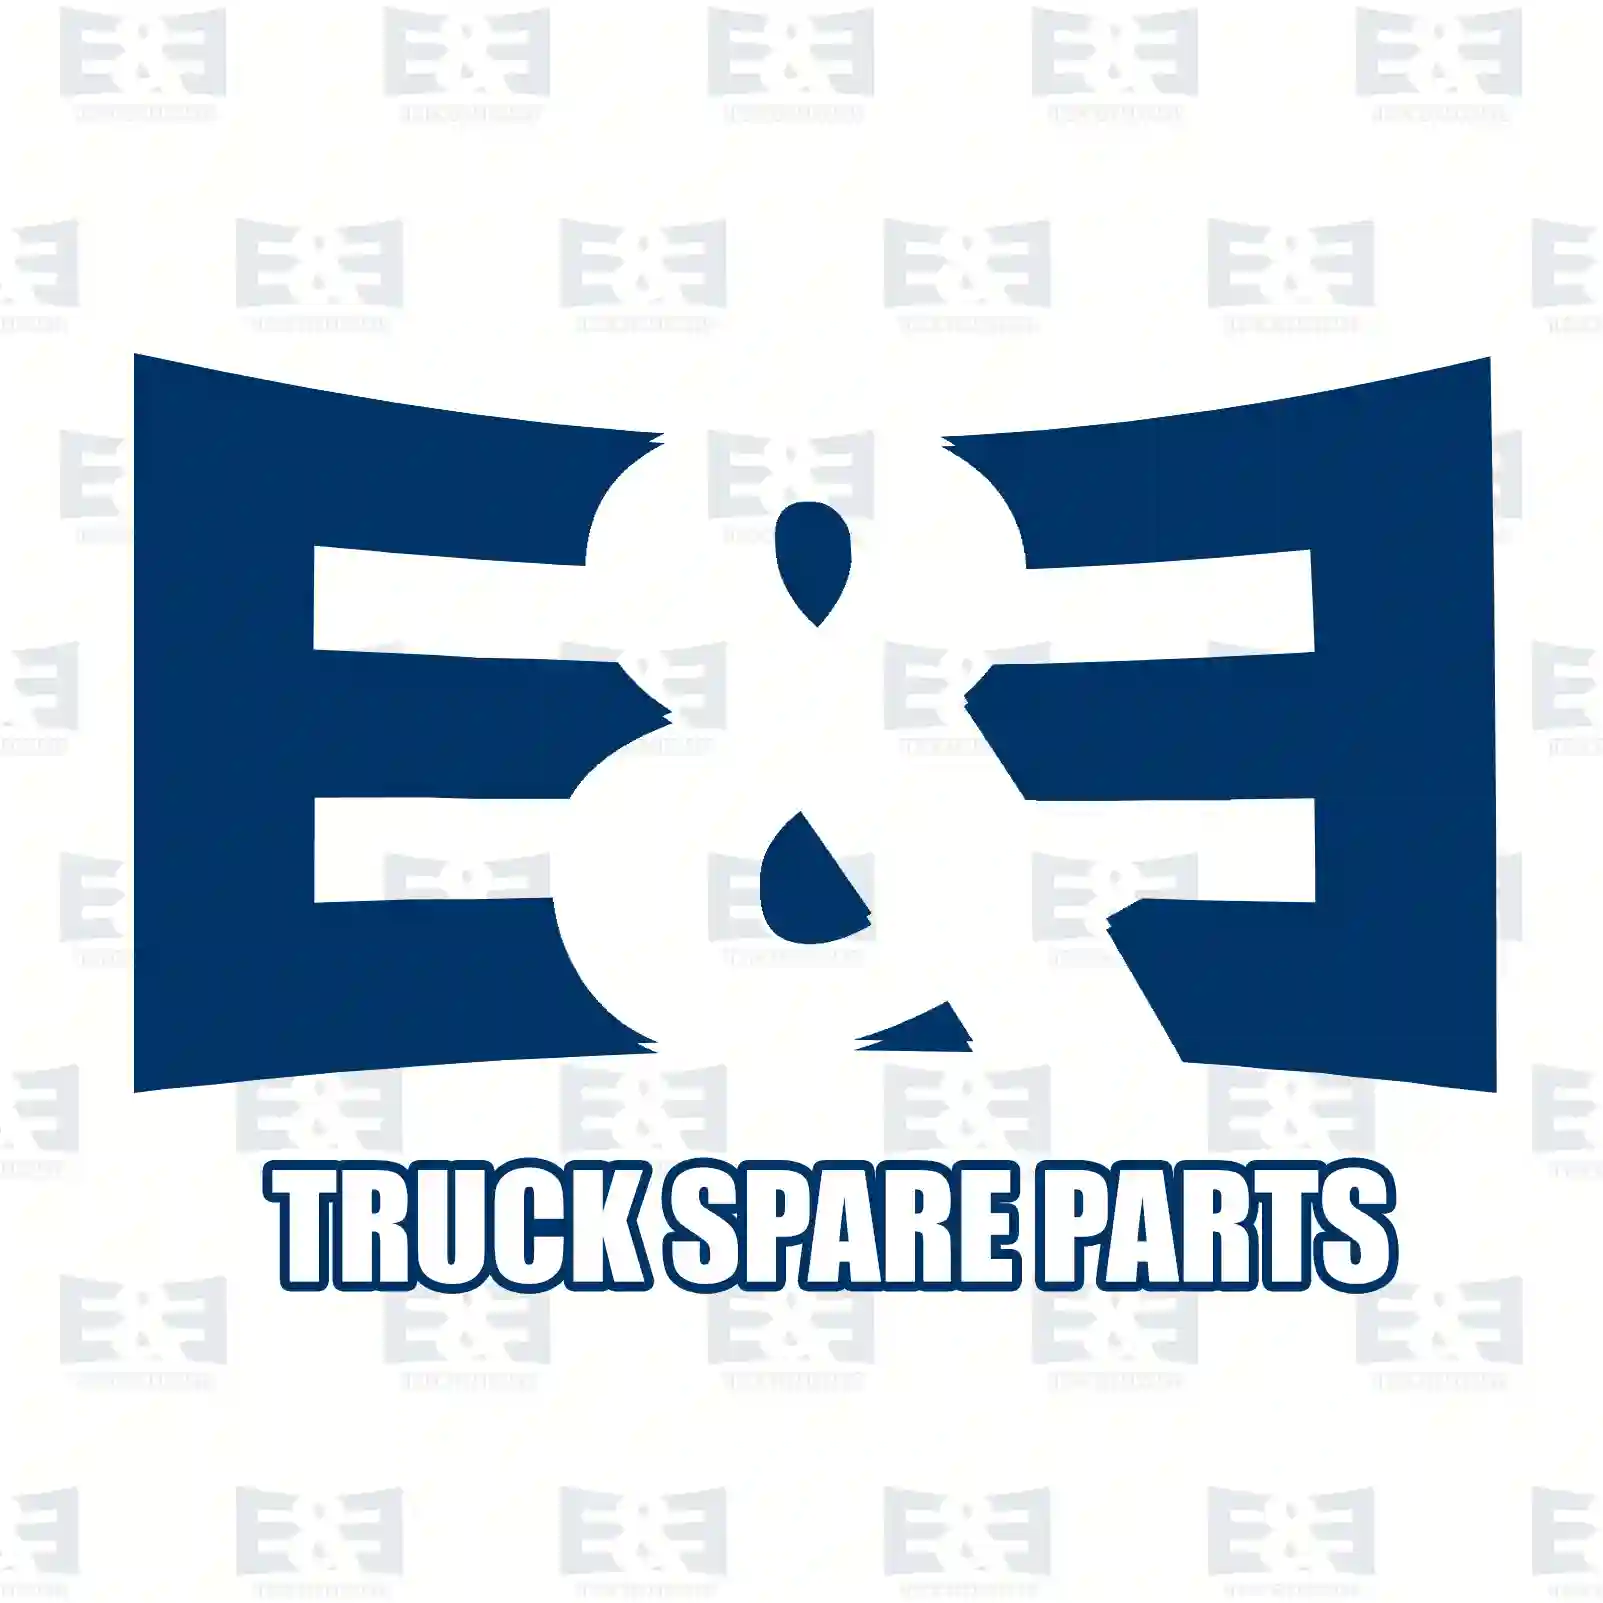 Clutch kit, 2E2288969, 81303059235S2 ||  2E2288969 E&E Truck Spare Parts | Truck Spare Parts, Auotomotive Spare Parts Clutch kit, 2E2288969, 81303059235S2 ||  2E2288969 E&E Truck Spare Parts | Truck Spare Parts, Auotomotive Spare Parts